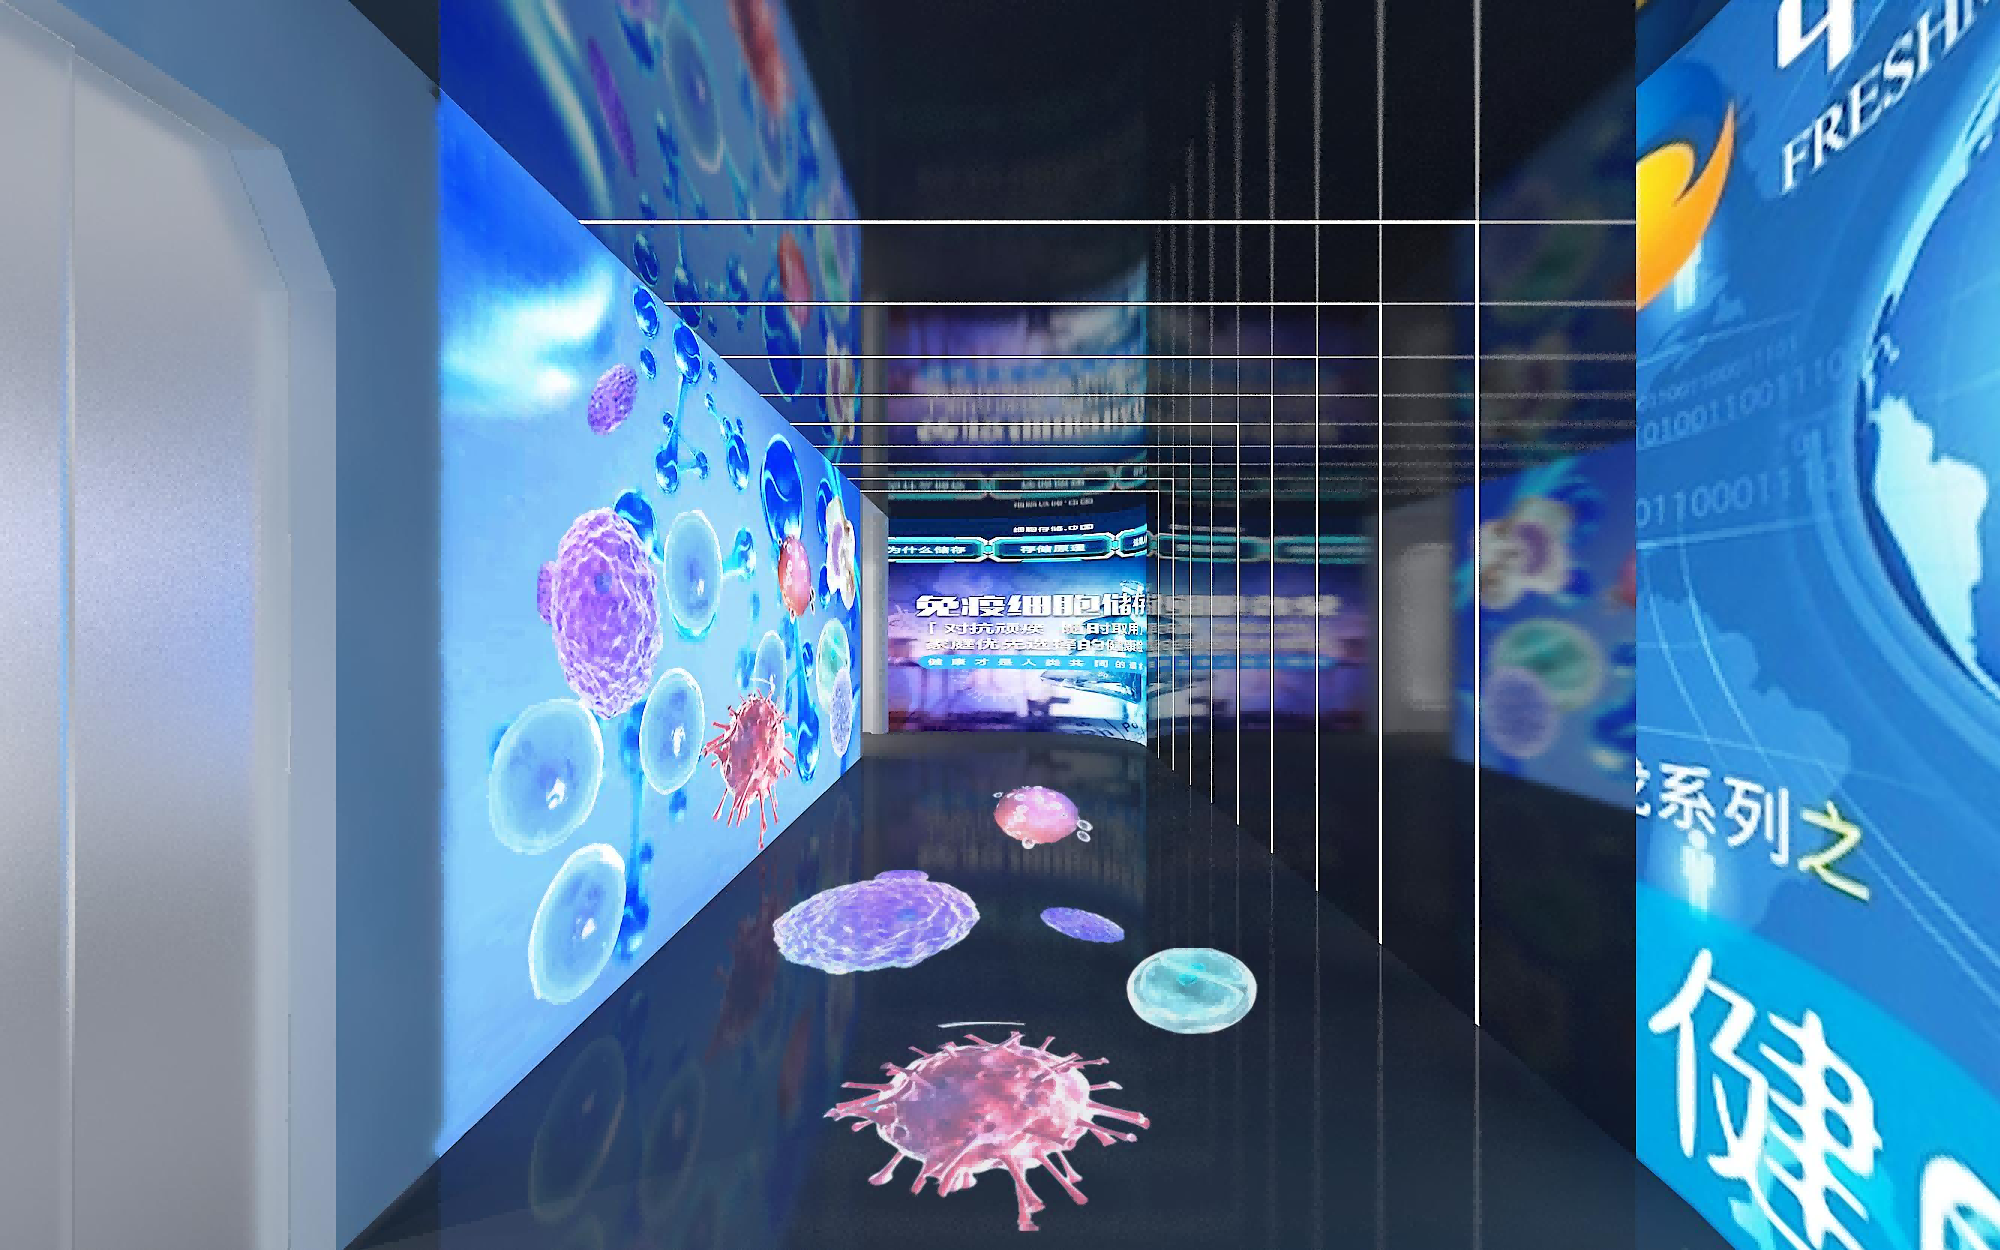 干细胞展厅设计—思威图数字“劳斯莱斯”级别，需要具备科技感、艺术性、教育性以及人性关怀等多方面的特点